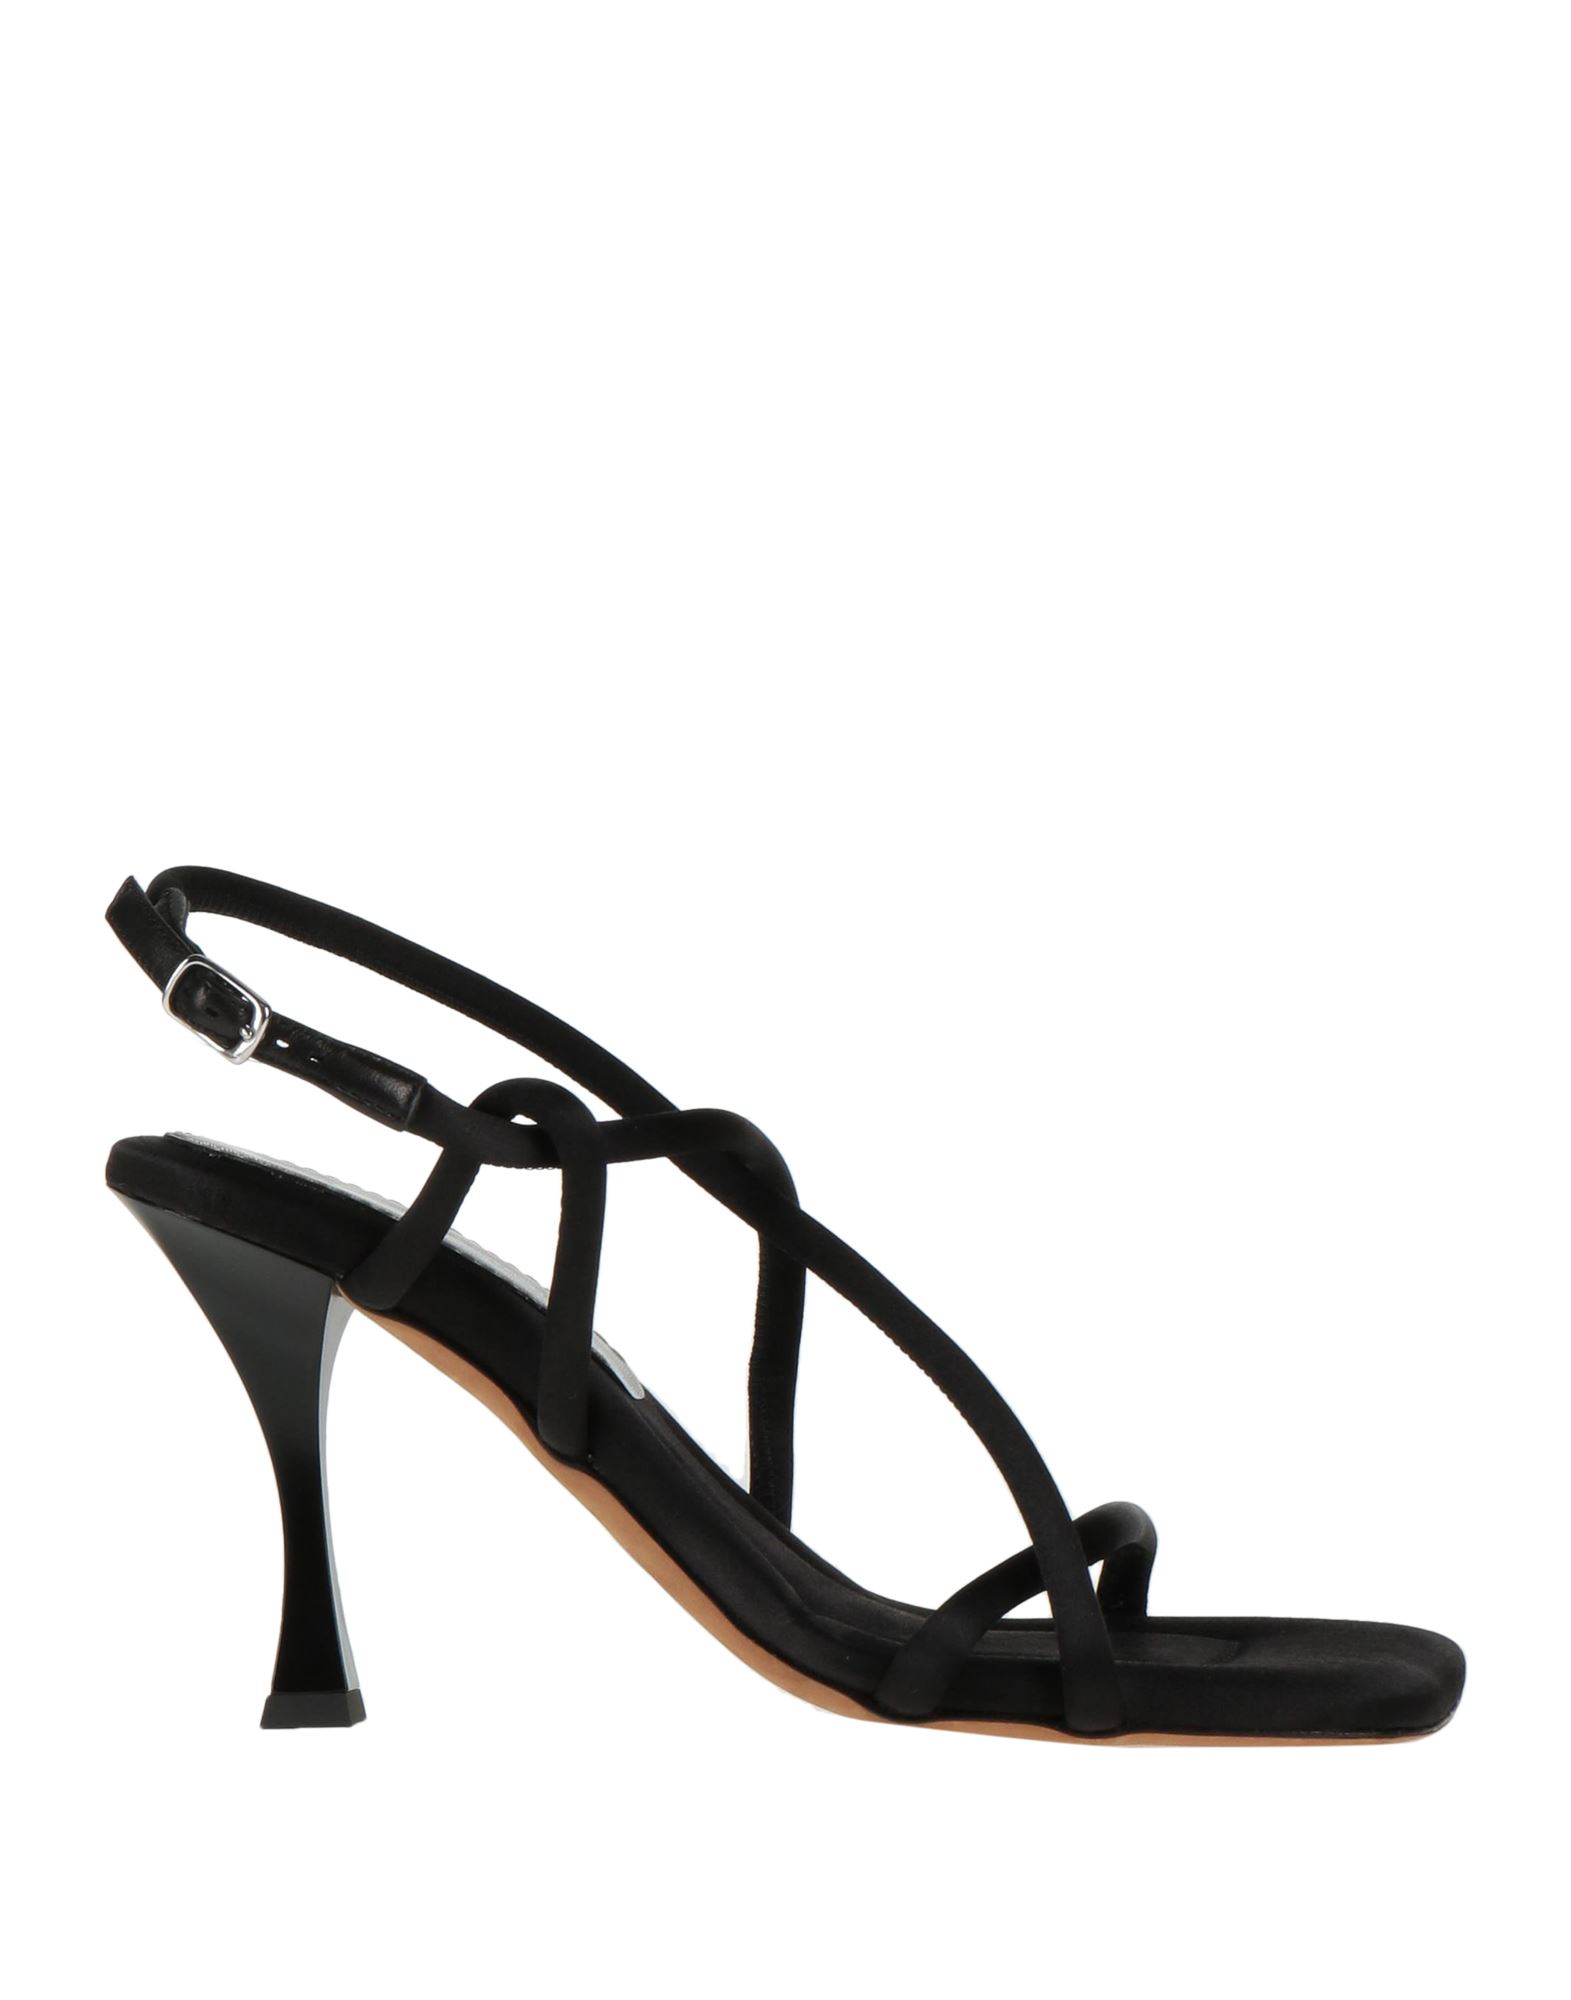 Shop Proenza Schouler Woman Sandals Black Size 7.5 Textile Fibers